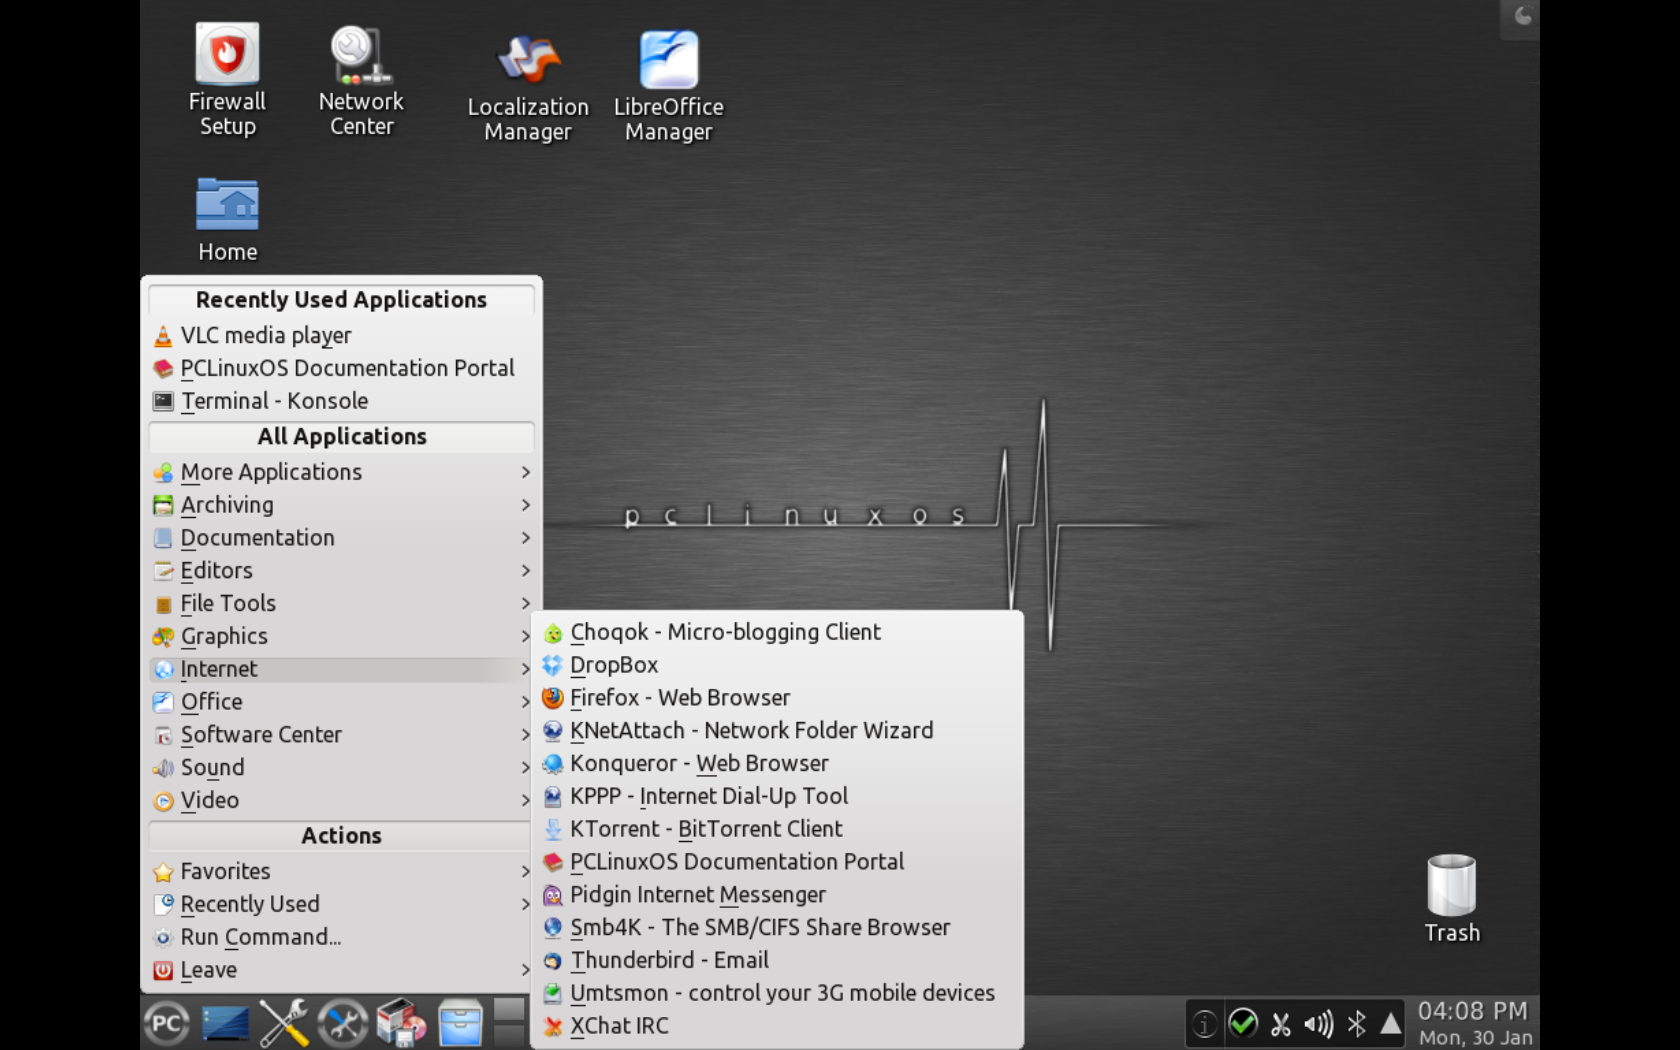 KDE2012.02